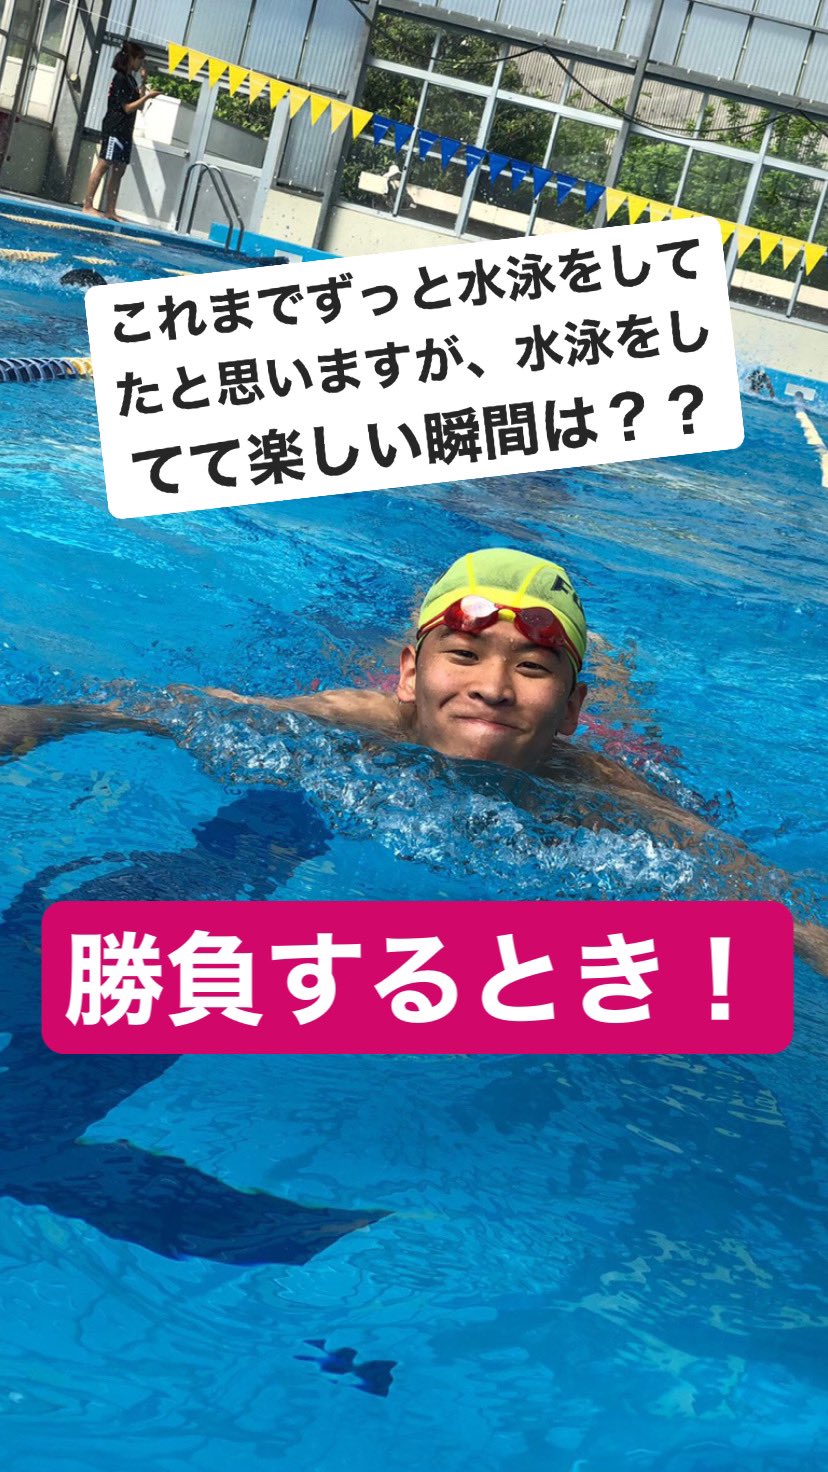 大阪大学体育会水泳部新歓 部員にインタビューしてみた Vol 4 高橋裕汰 3回生 法 法 陸上にいるときはみんなから愛される癒しキャラ かわいい 水中にいるときはみんなから頼られる阪大のエース かっこいい 口癖は っそーなんすか